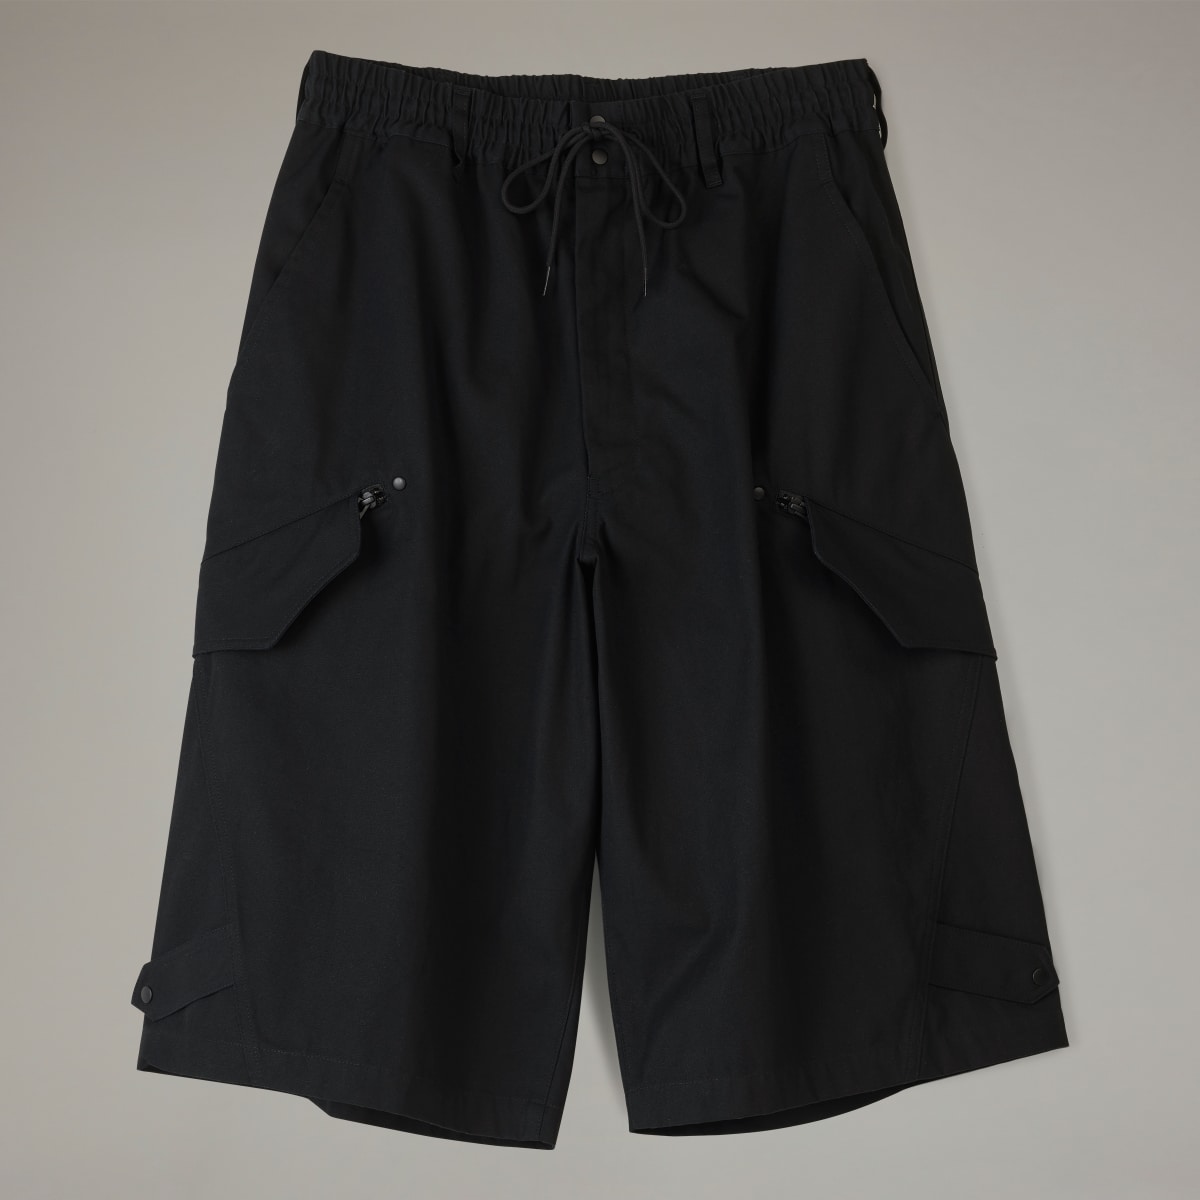 Adidas Y-3 Workwear Shorts. 5